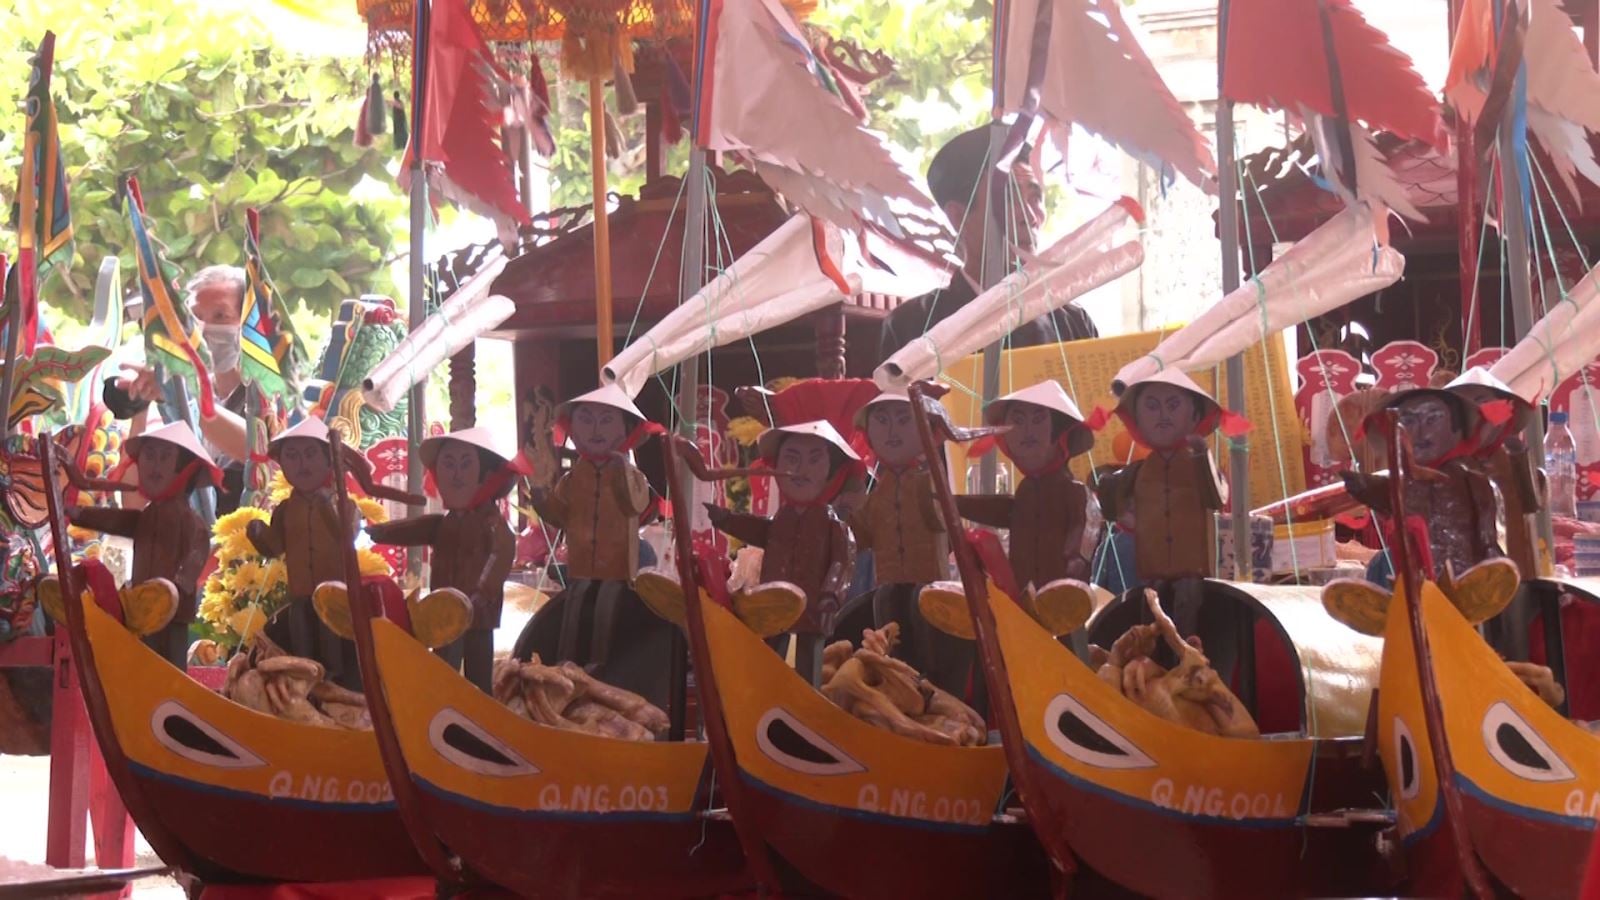 Lễ khao lề thế lính Hoàng Sa được tổ chức không phải chỉ ở đất đảo Lý Sơn, mà còn ở nhiều nơi khác dọc ven biển Quảng Ngãi.